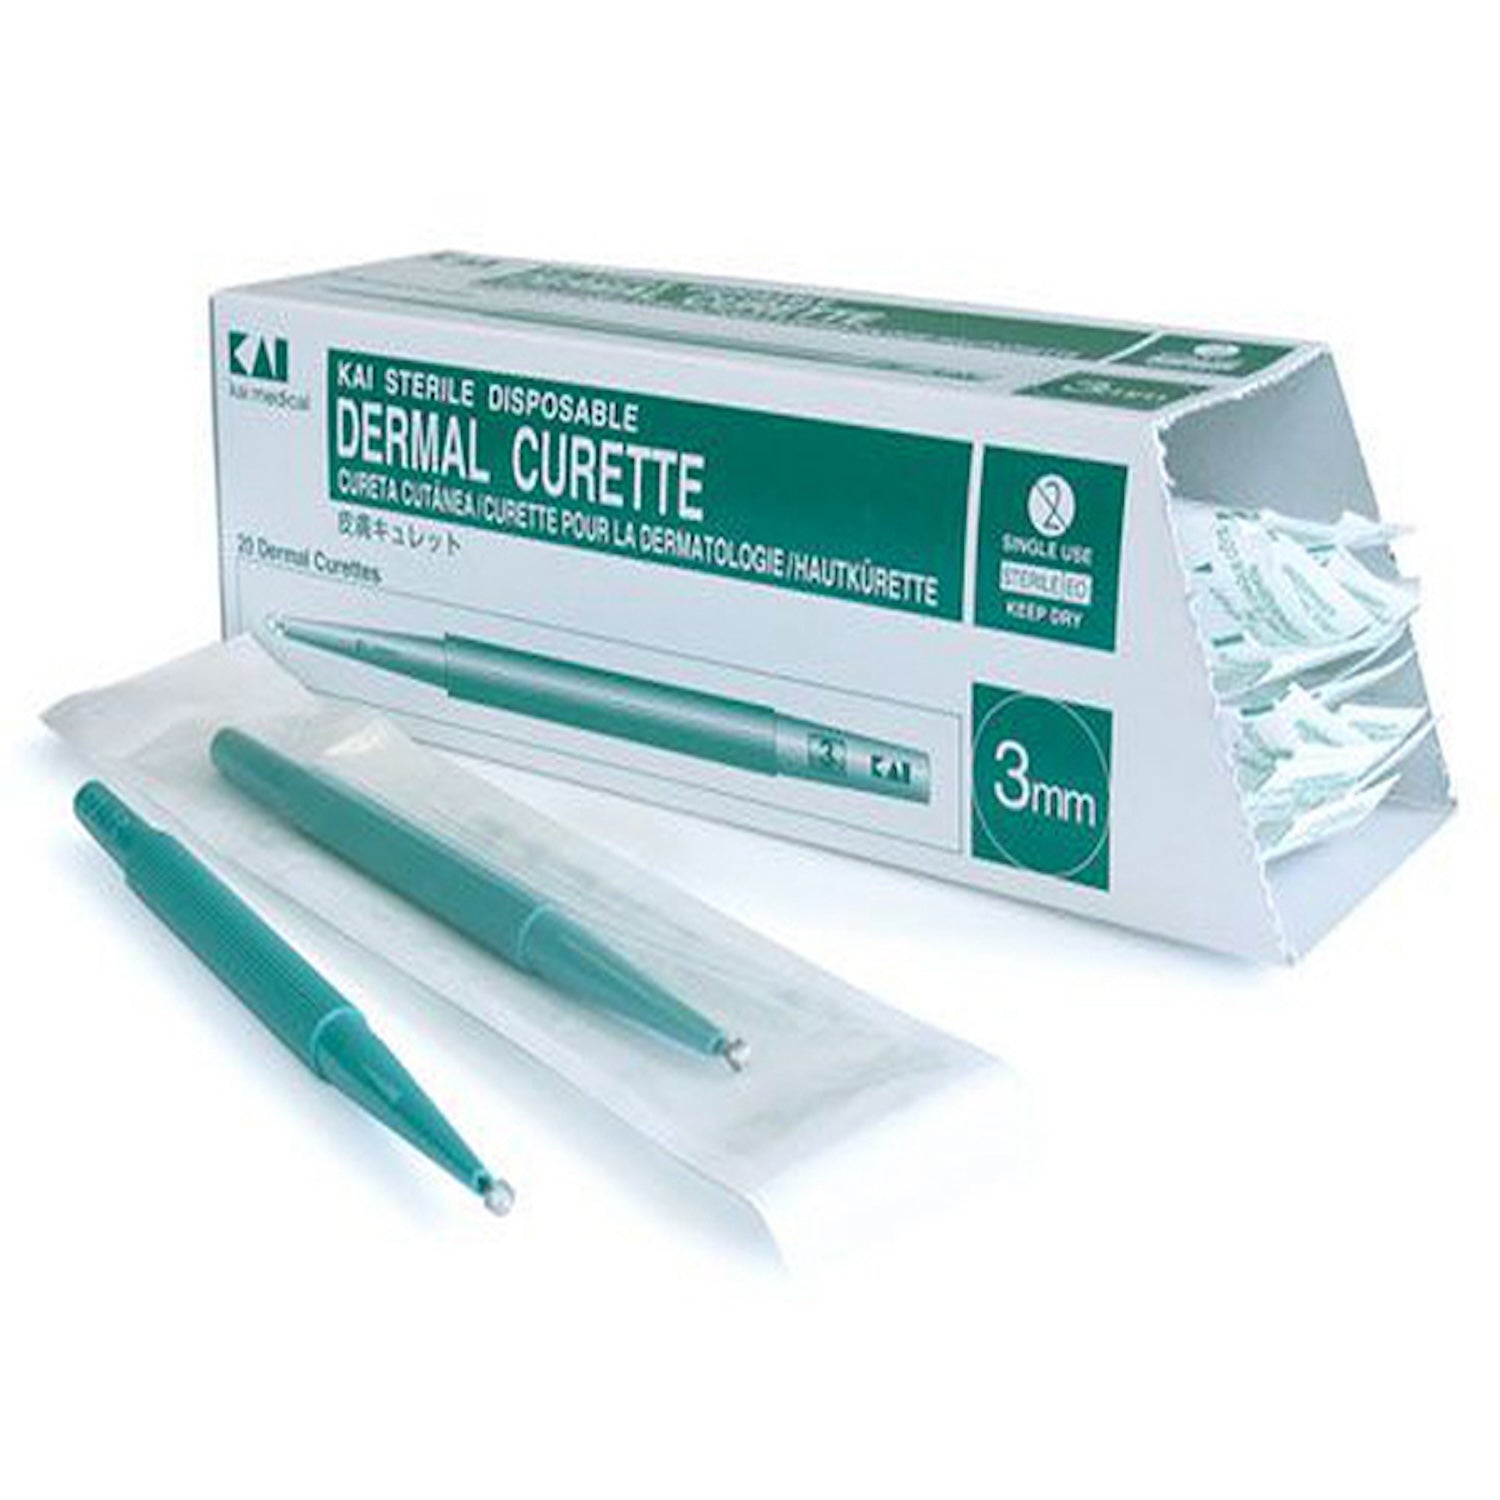 Kai Disposable Dermal Curettes | 5mm | Pack of 20 (1)